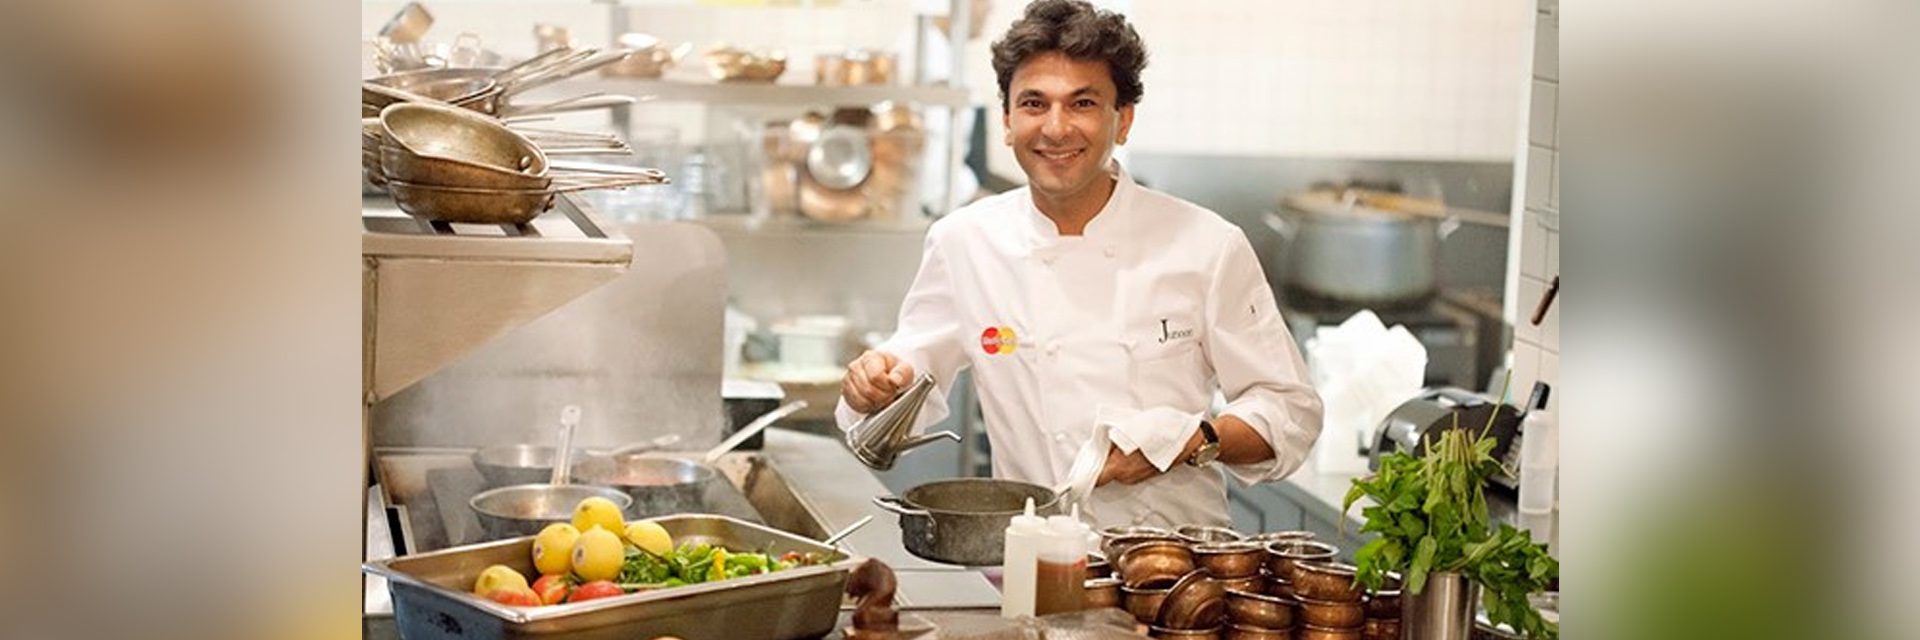 米其林星级厨师 Vikas Khanna 的作品跨越了艺术故事和同情心